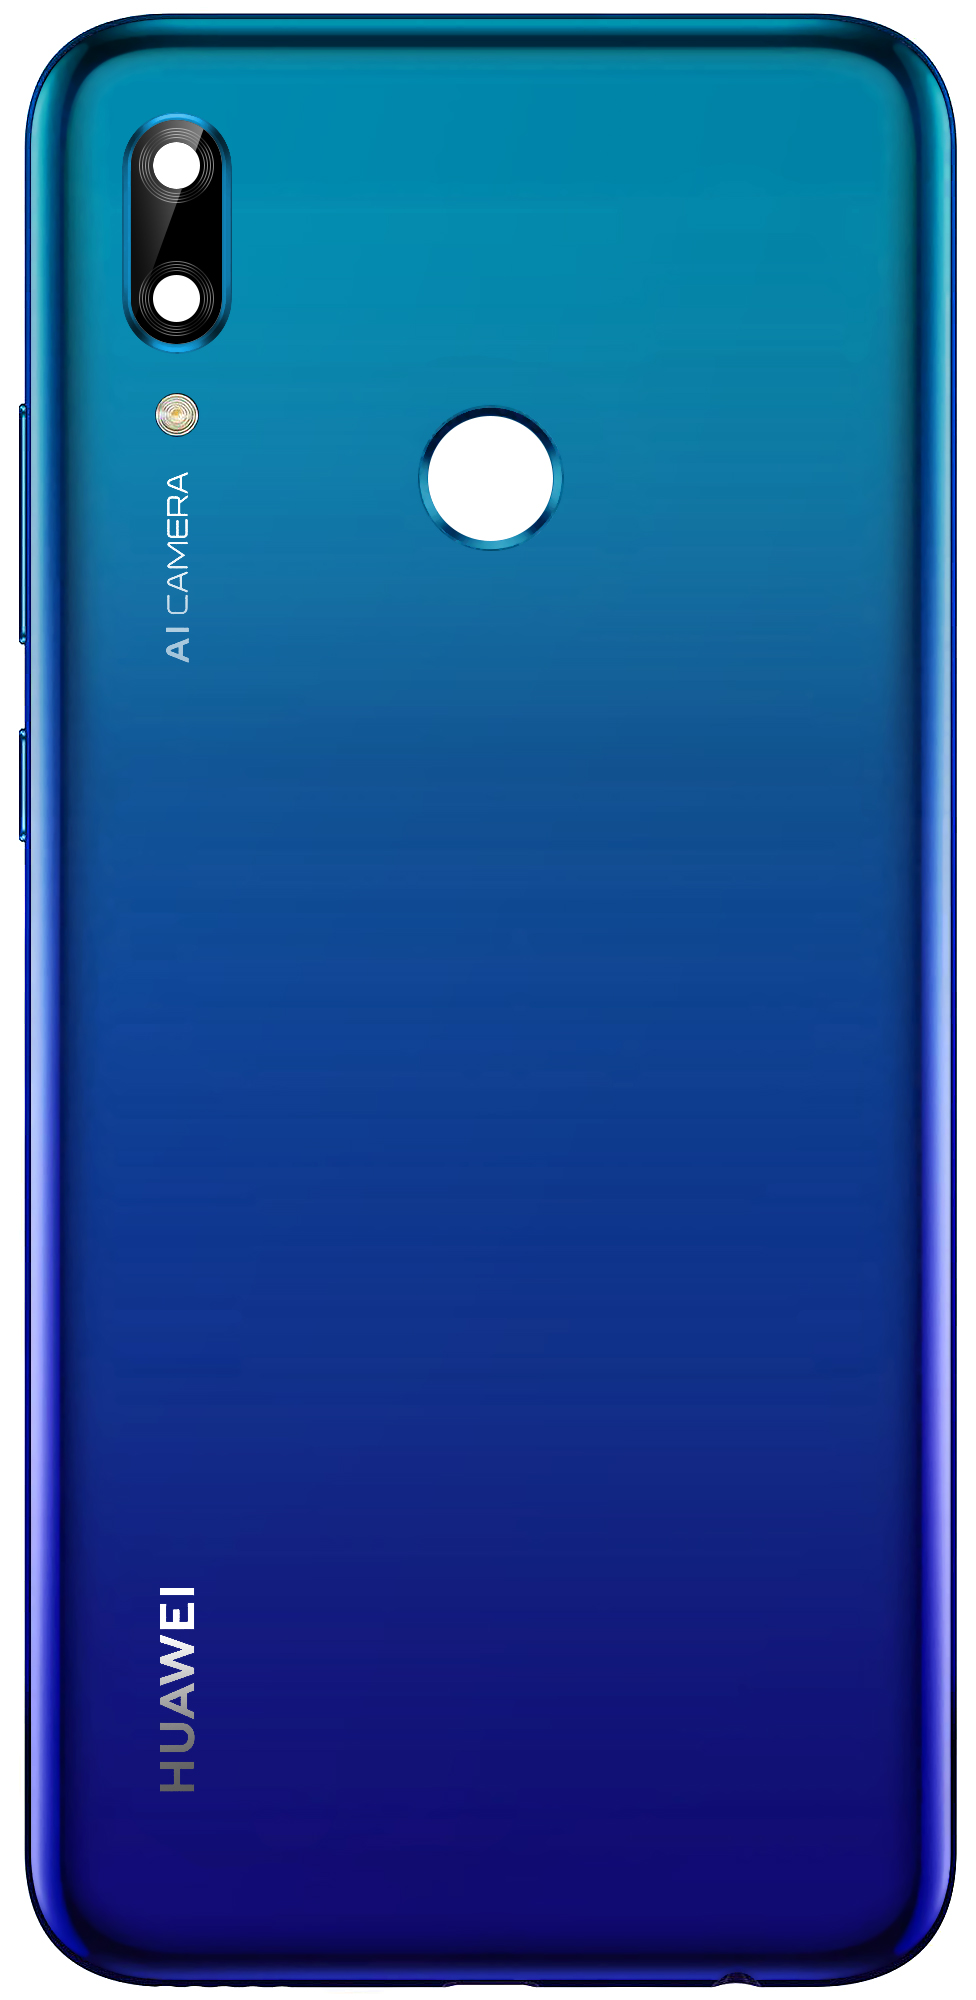 capac-baterie-huawei-p-smart--282019-29-2C-albastru